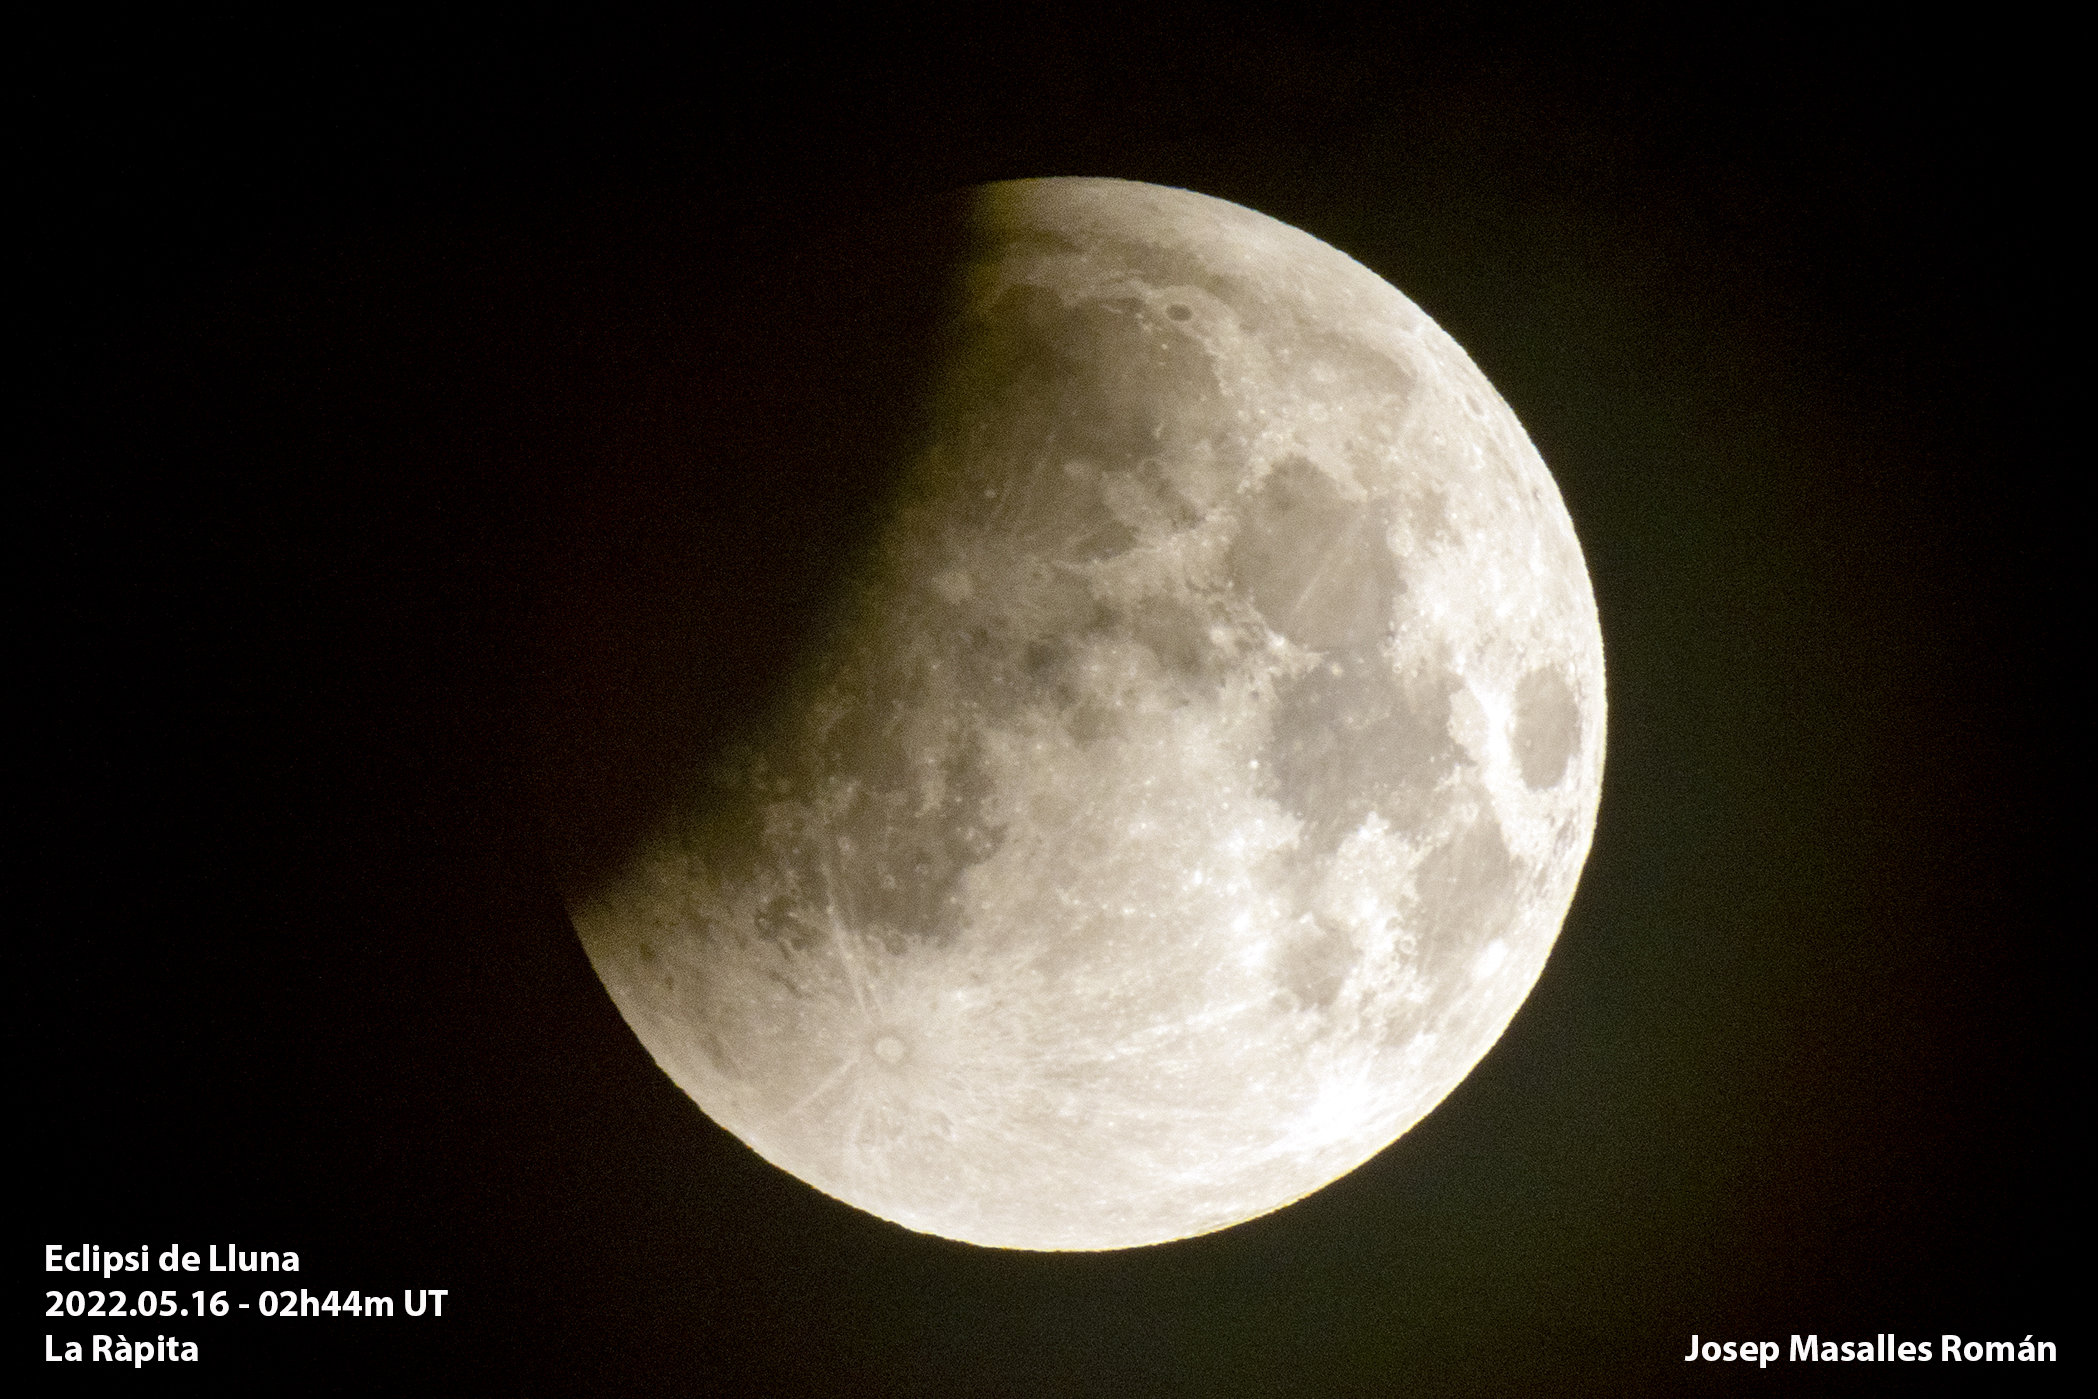 Eclipsi de Lluna - Josep Masalles